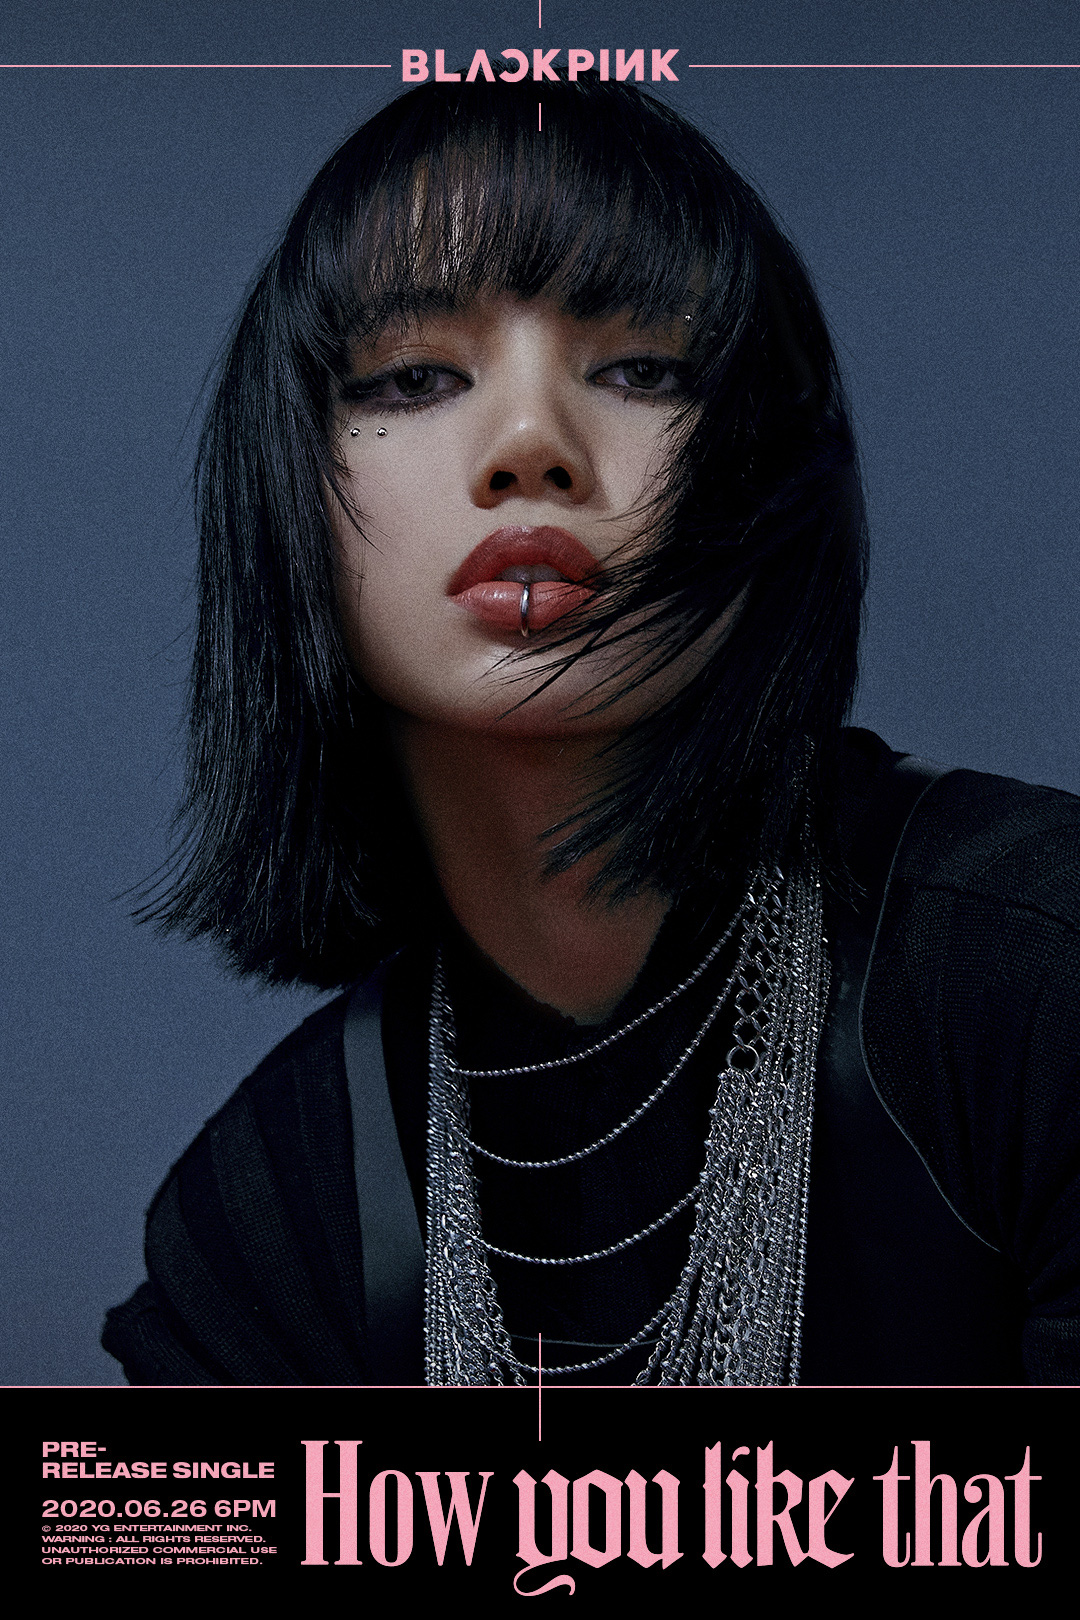 Lisa, thành viên của nhóm BlackPink, là một trong những nghệ sĩ nổi tiếng nhất của Hàn Quốc hiện nay. Hãy xem hình ảnh liên quan đến Lisa để khám phá thêm nét đẹp tuyệt vời và sự nổi tiếng của cô ấy trong giới giải trí.